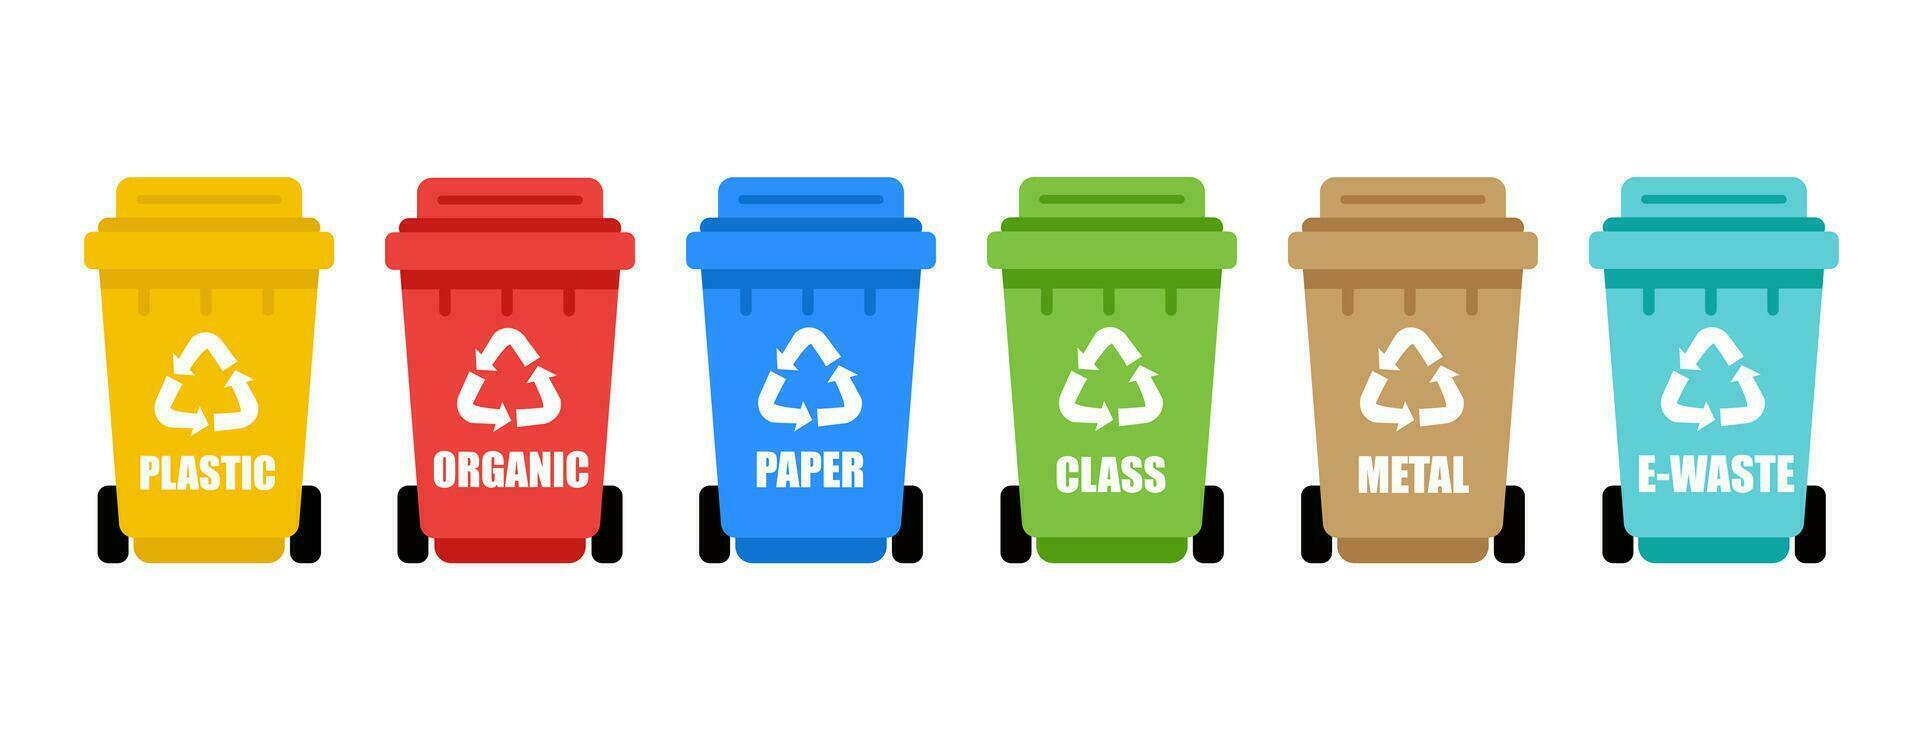 kleurrijk recycle plastic bakken. divers types van afval-organisch, plastic, metaal, papier, glas, elektronisch afval. scheiding van verspilling Aan vuilnis blikjes voor recycling vector